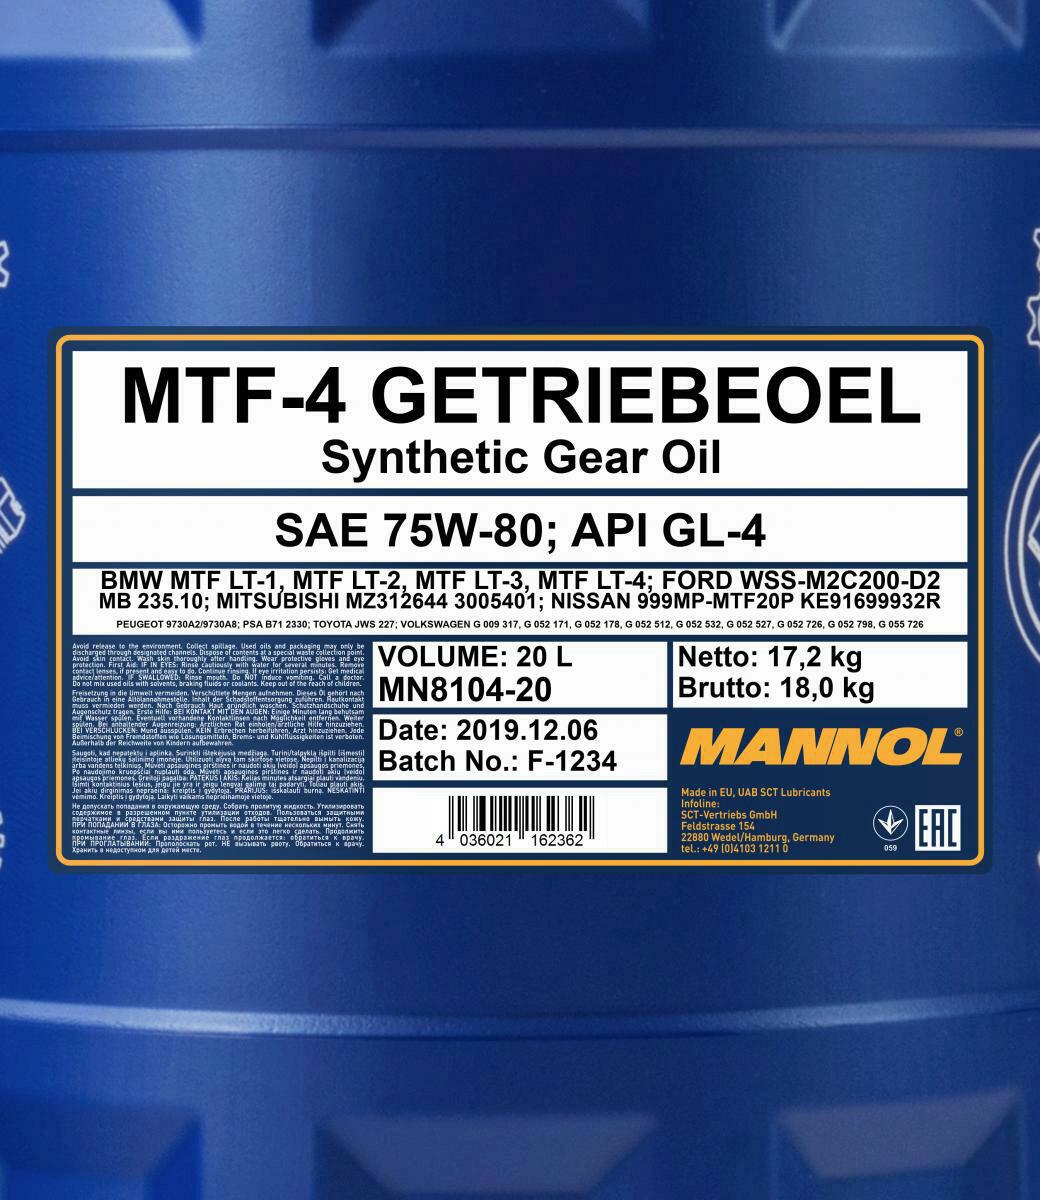 20L Mannol MTF-4 Getriebeöl 75W-80